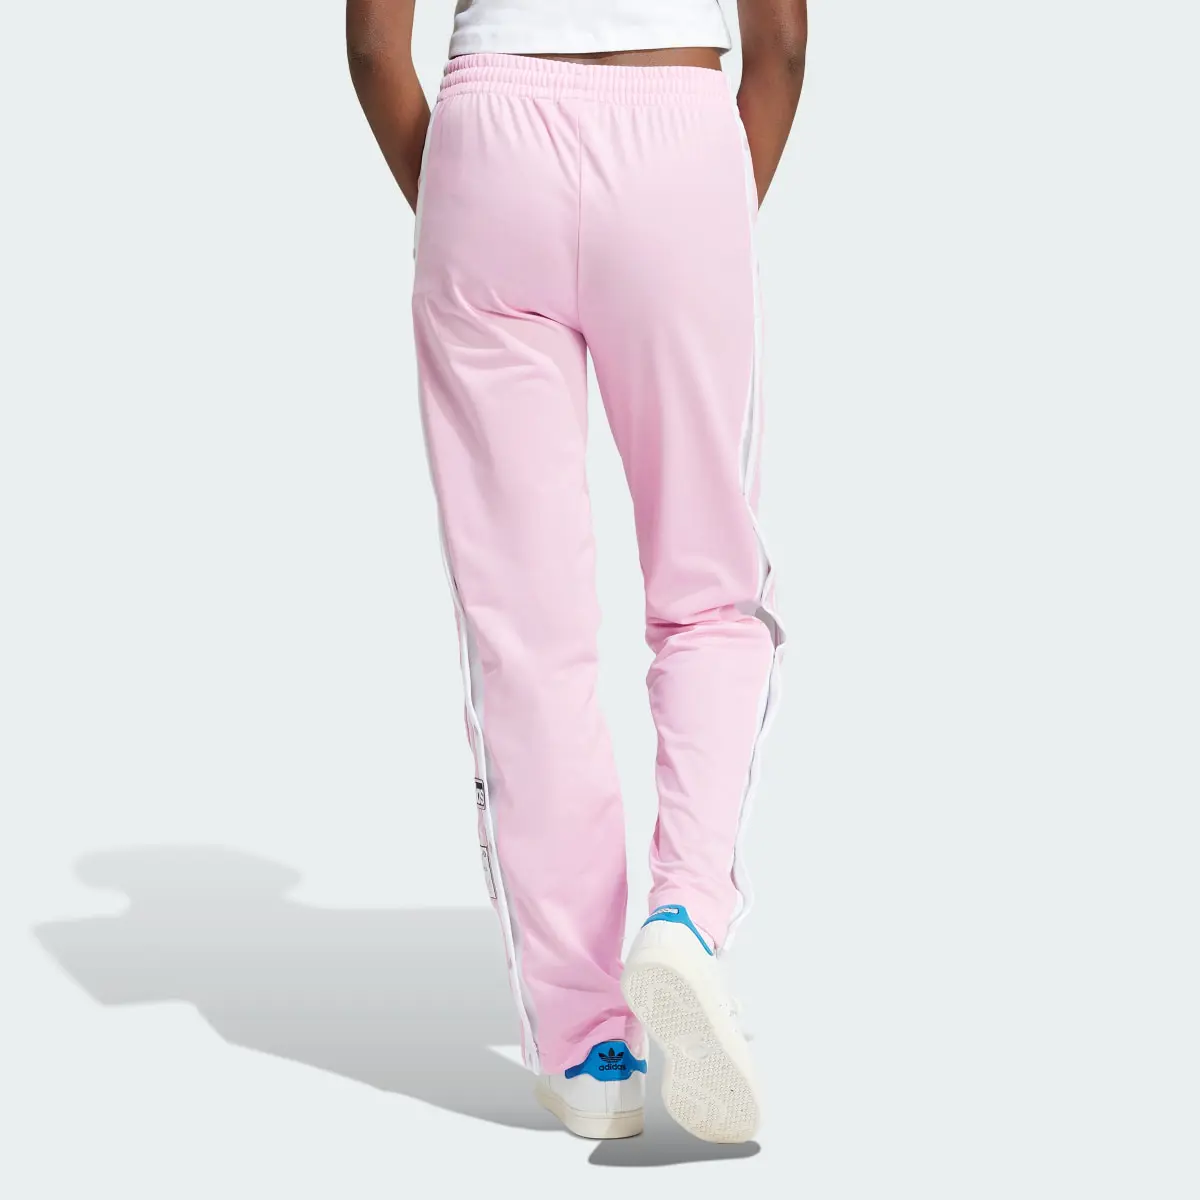 Adidas Adibreak Pants. 2